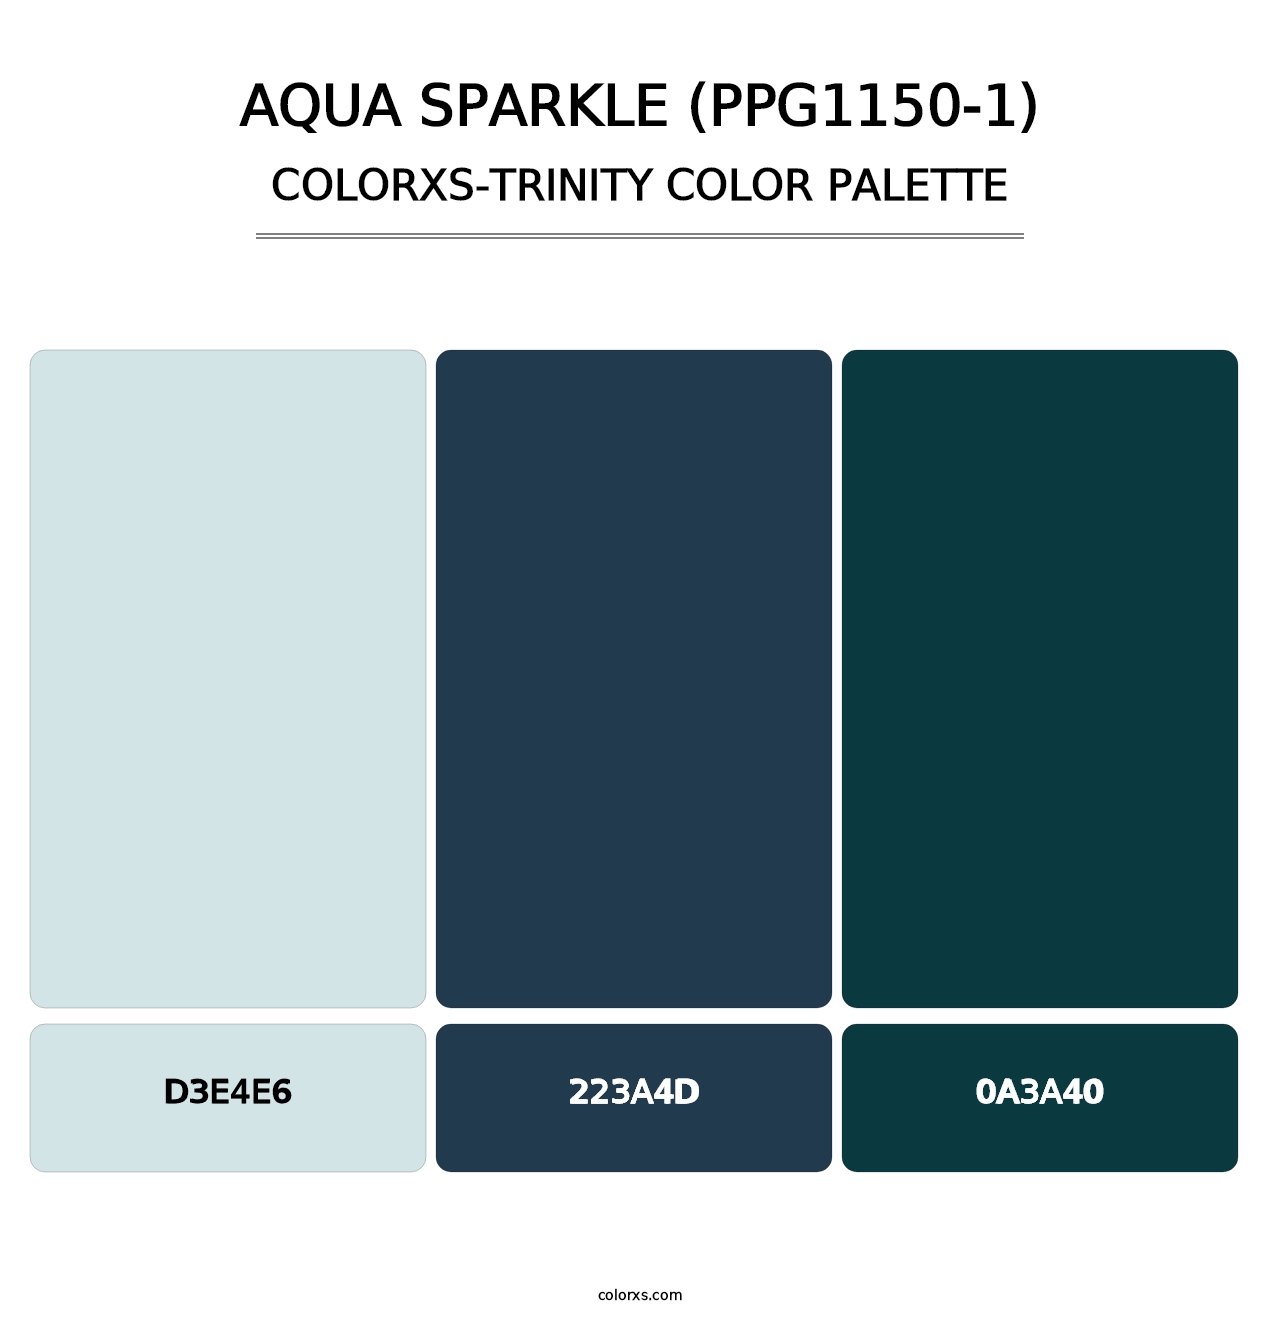 Aqua Sparkle (PPG1150-1) - Colorxs Trinity Palette